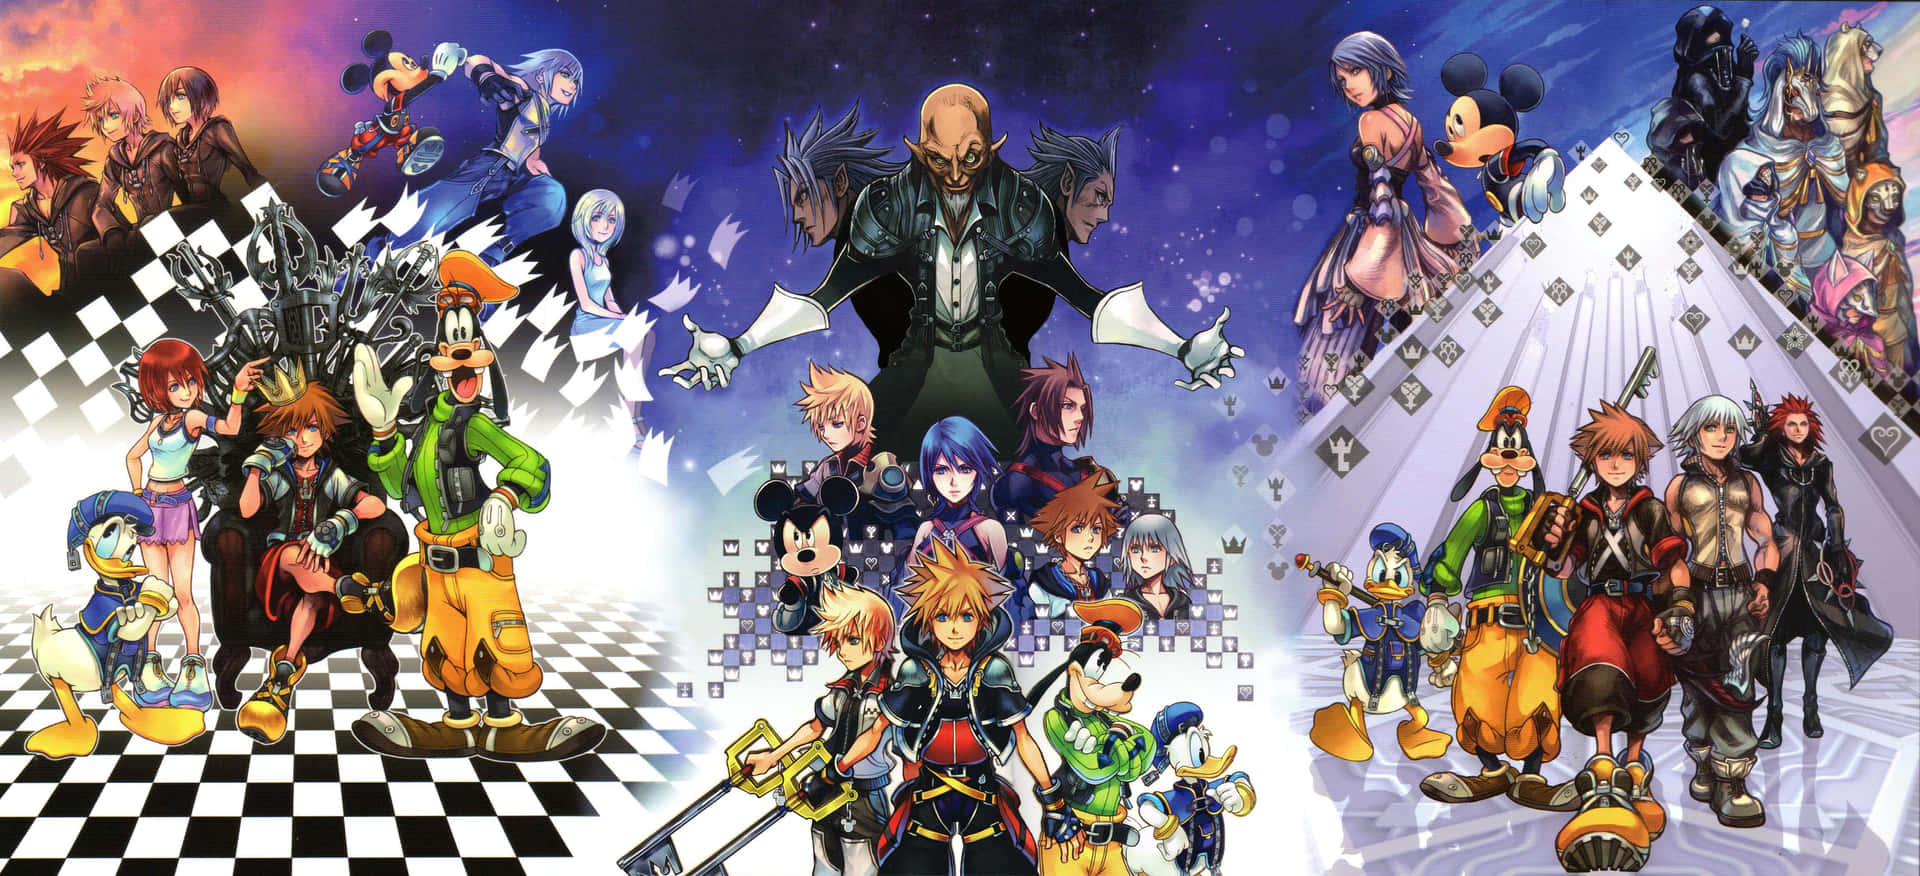 Unaaventura Mágica Está Por Venir Con Sora Y Sus Amigos En Kingdom Hearts.